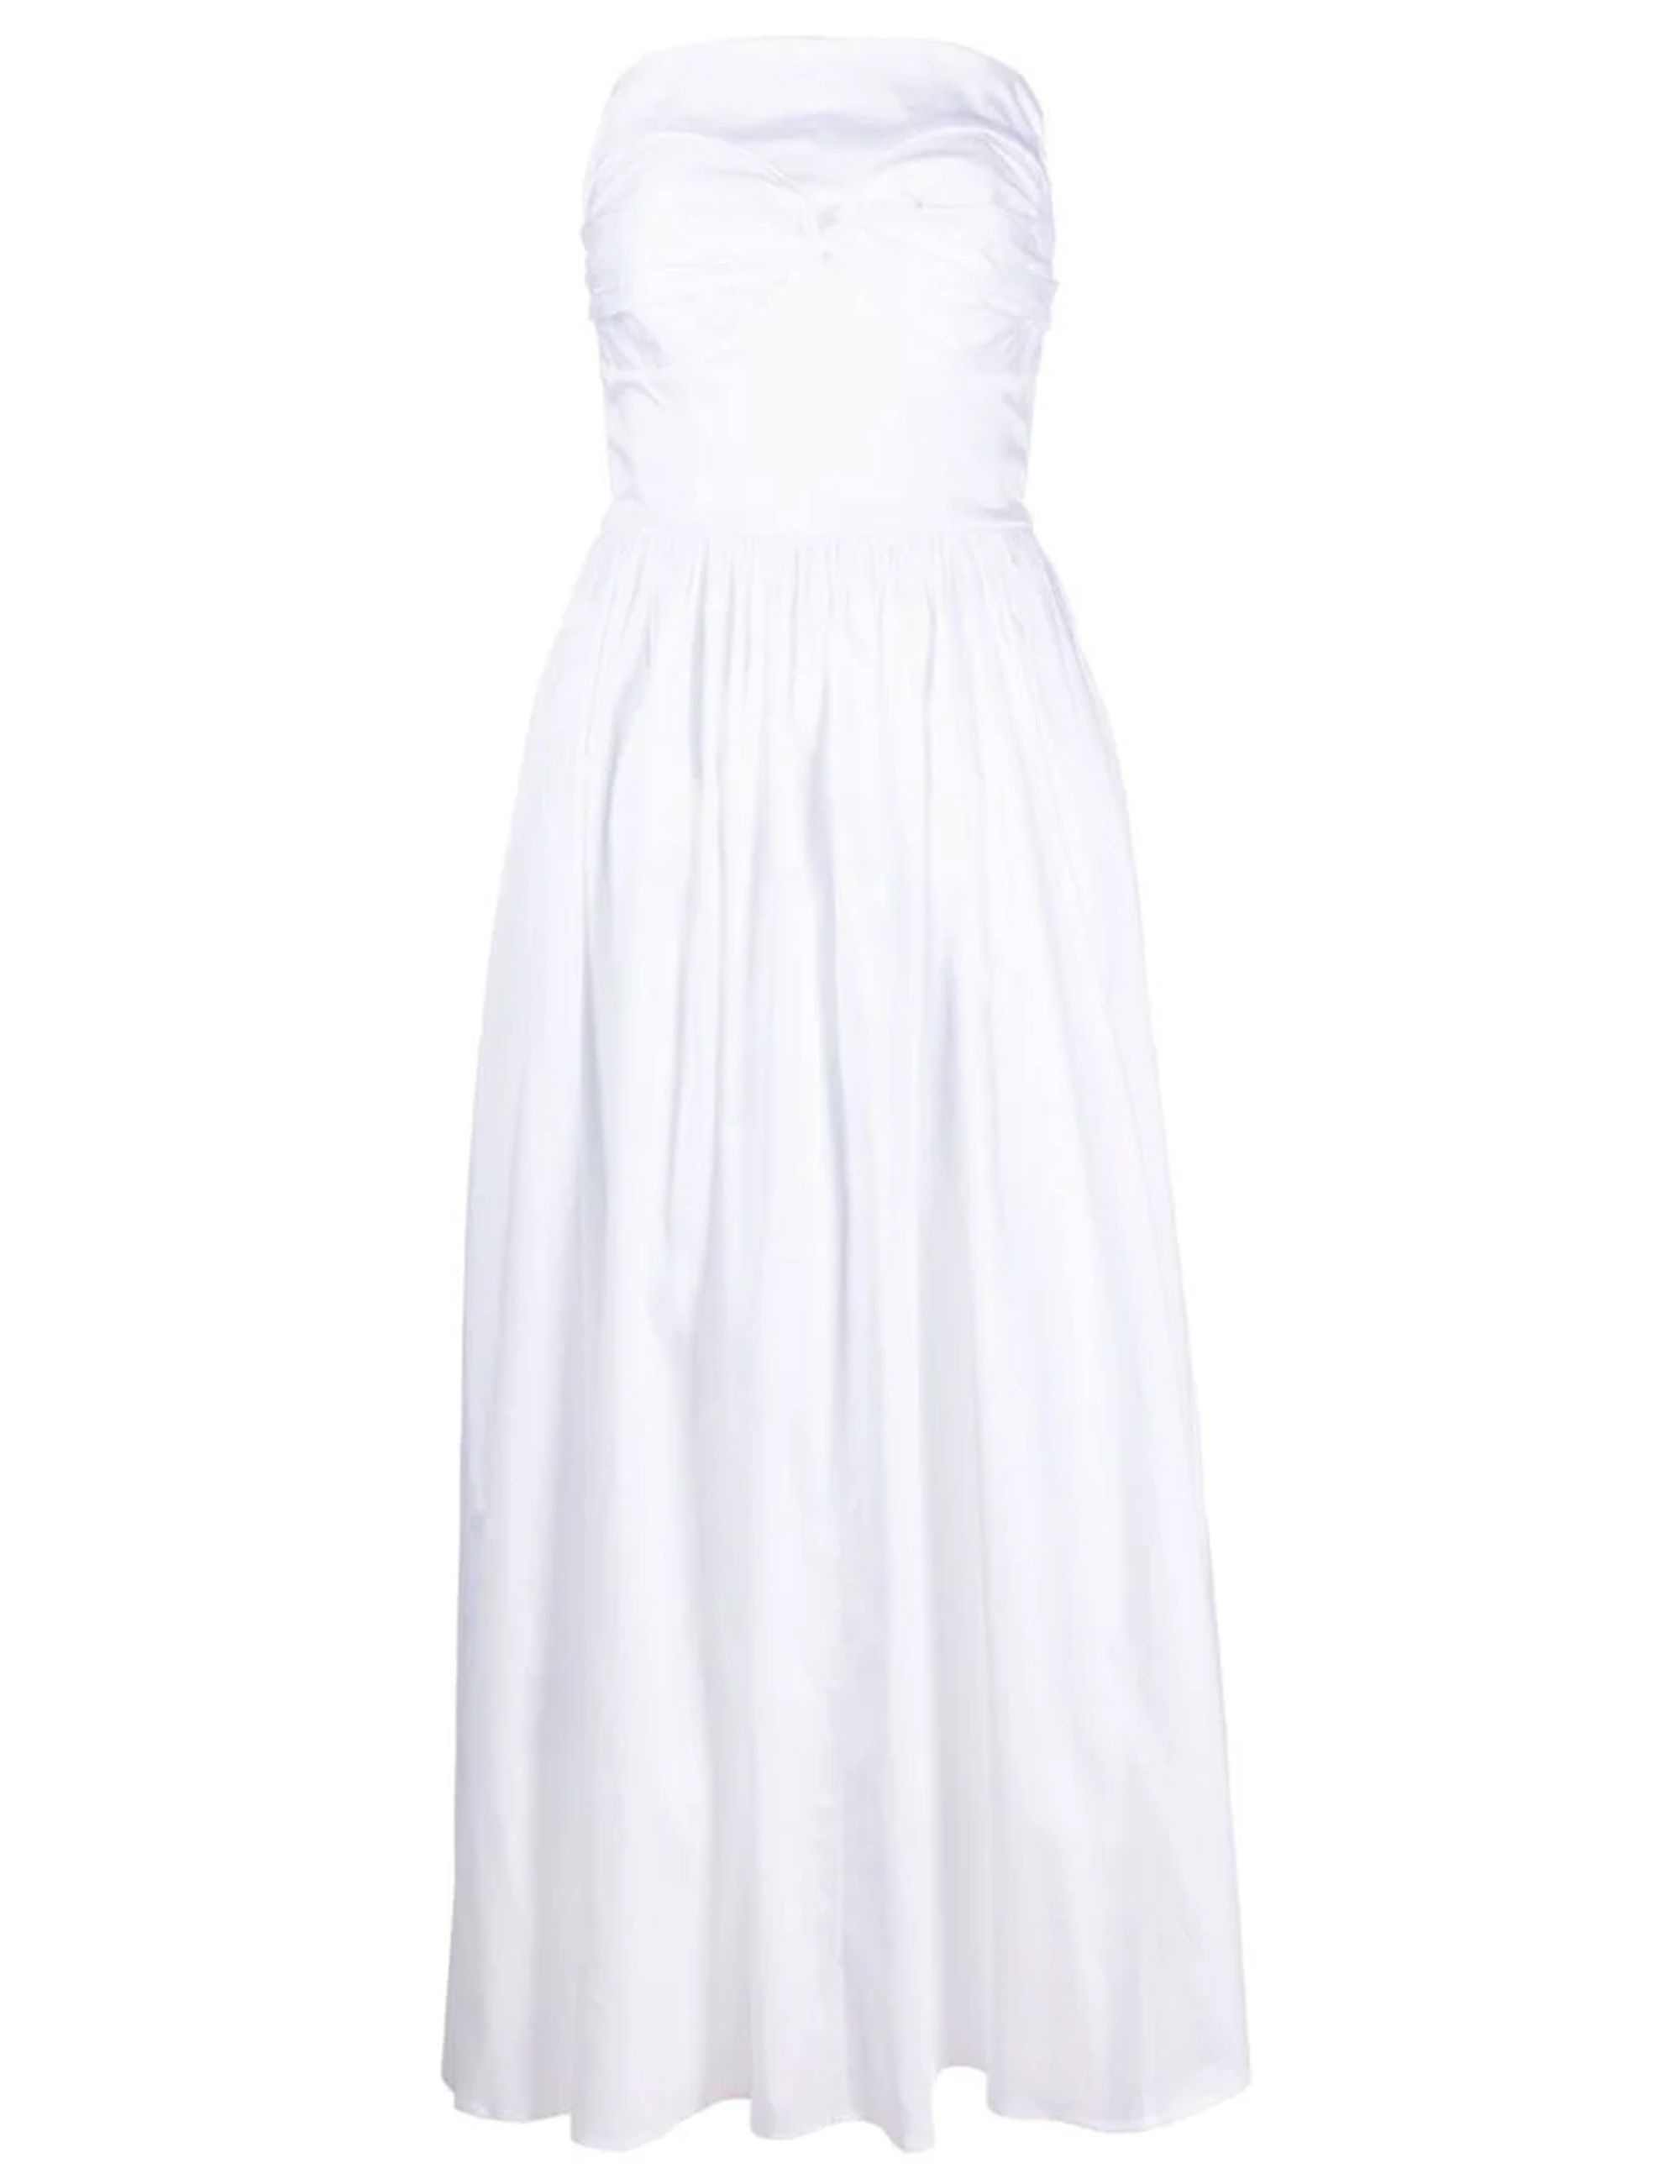 The 3 Cutest White Summer Dresses - Pinteresting Plans